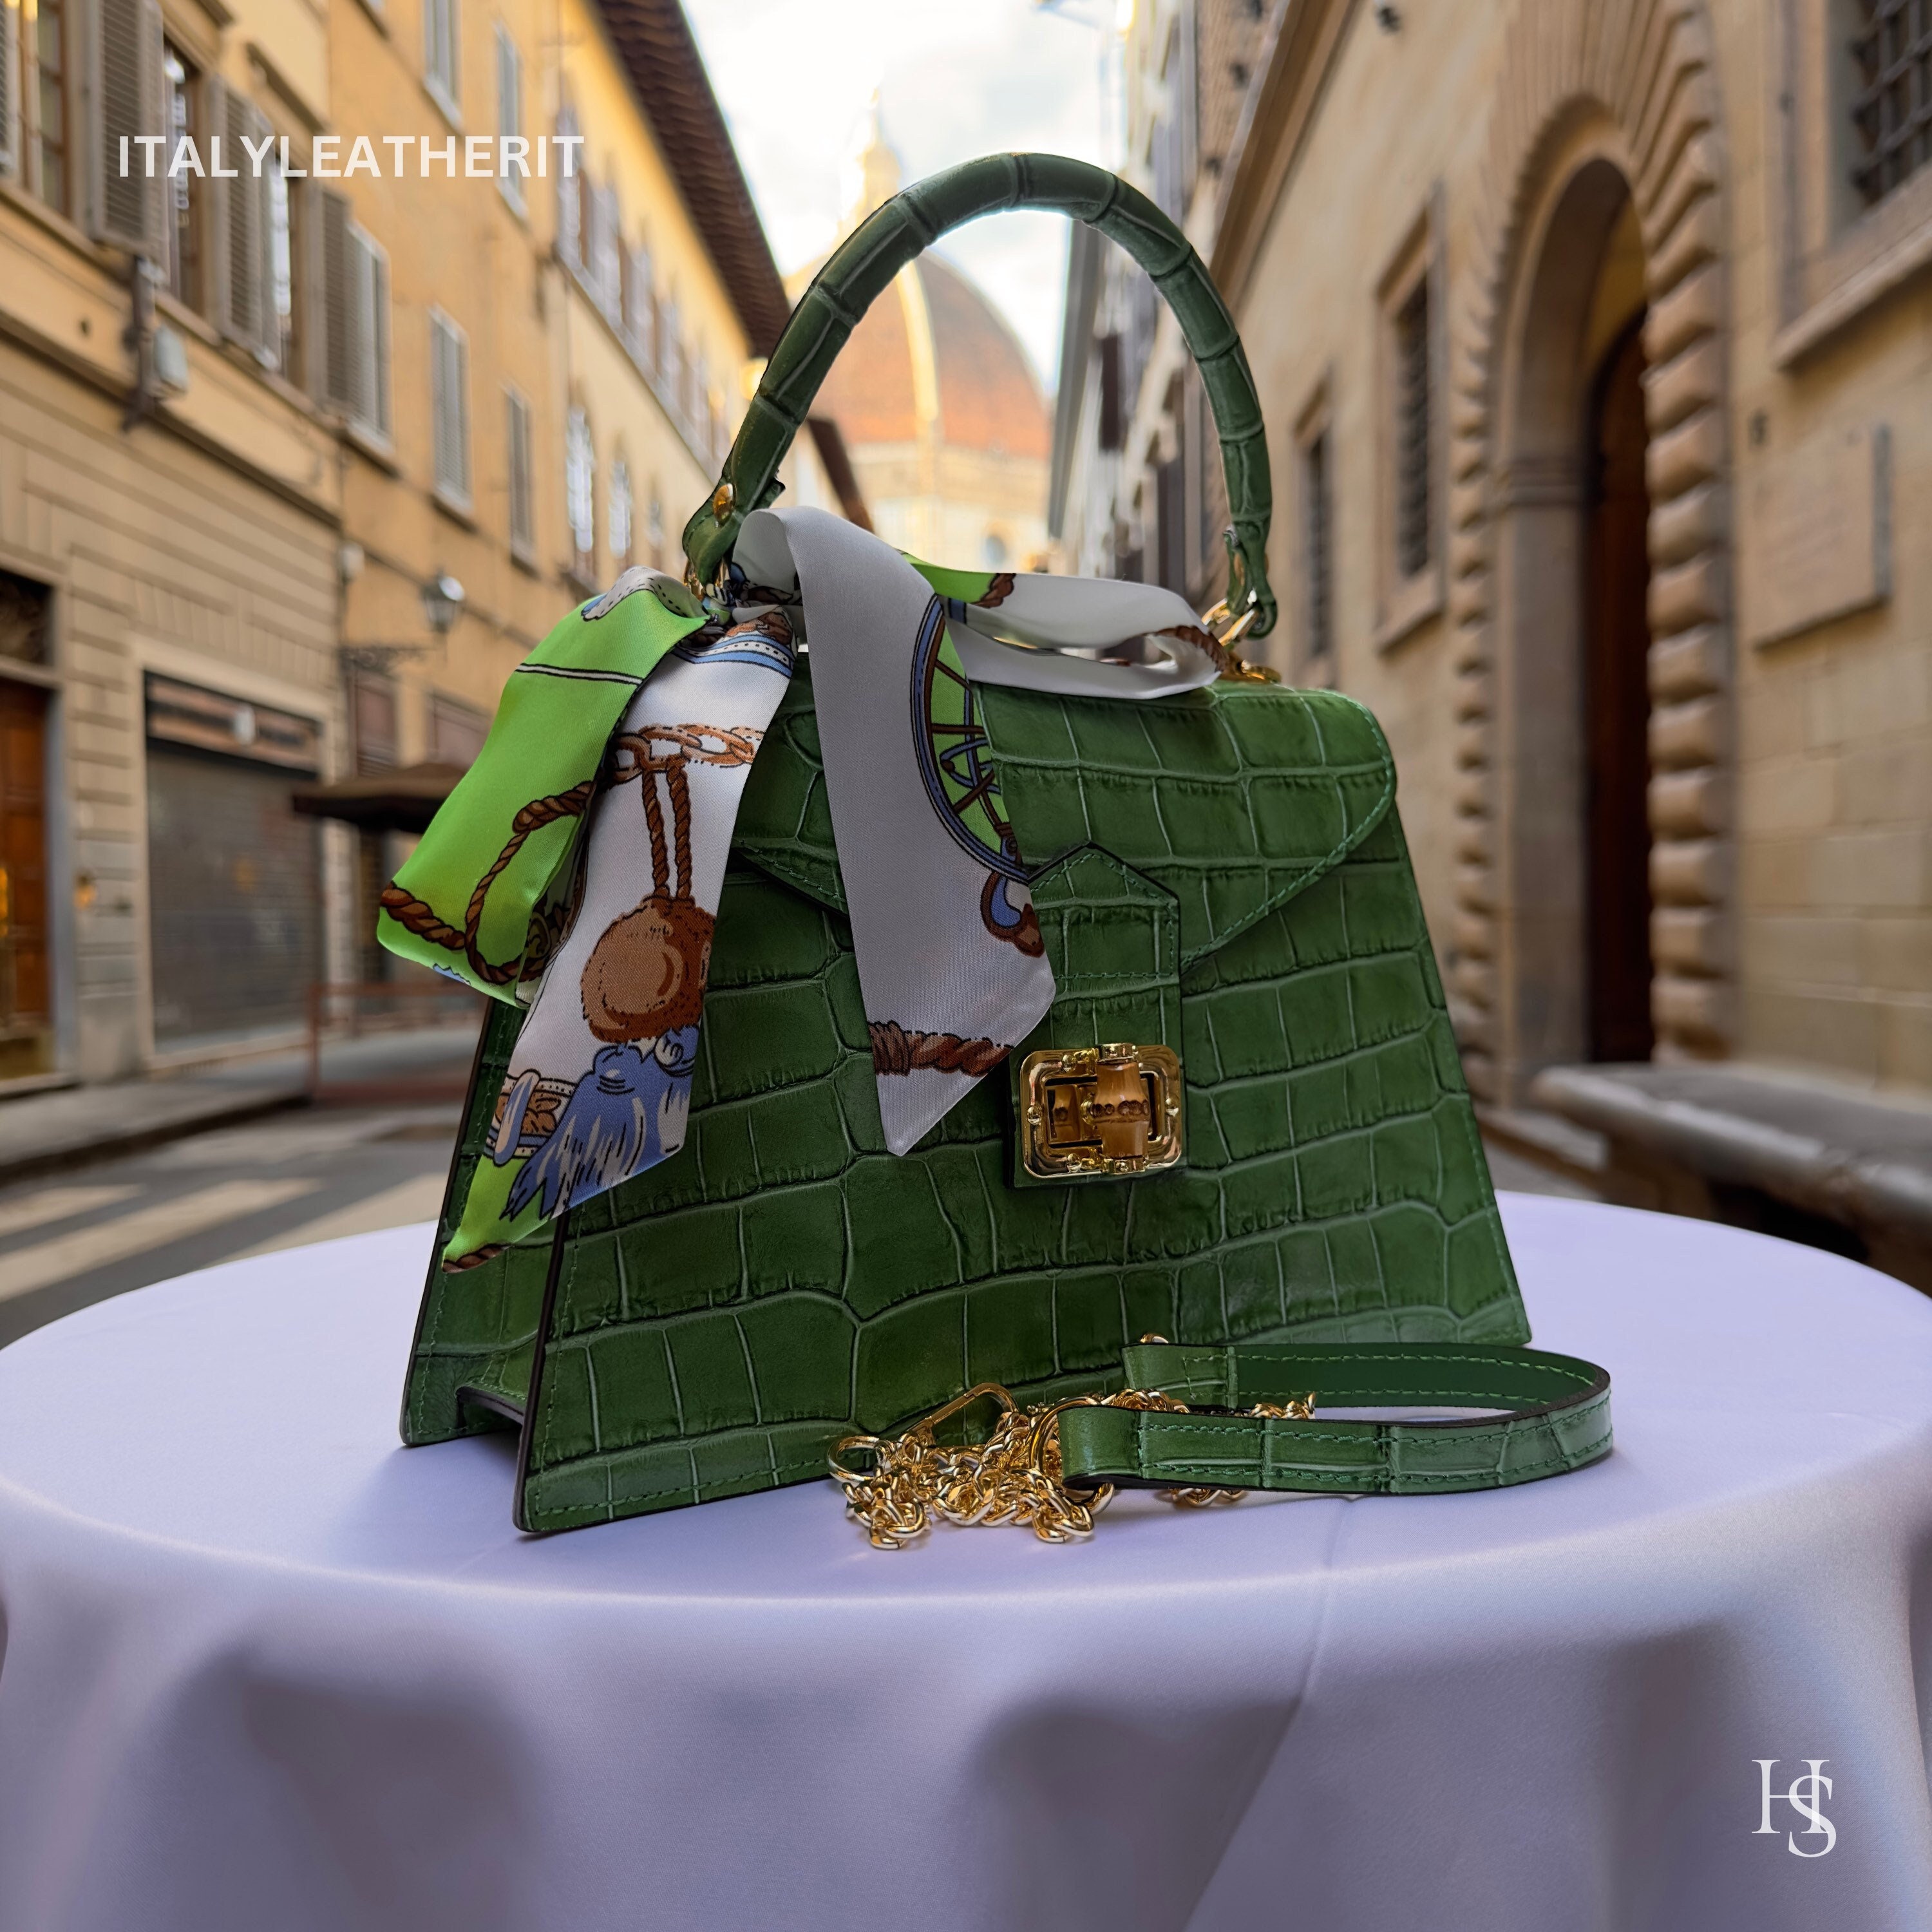 Hermes Shoulder Bag, crocodile leather vibrant green